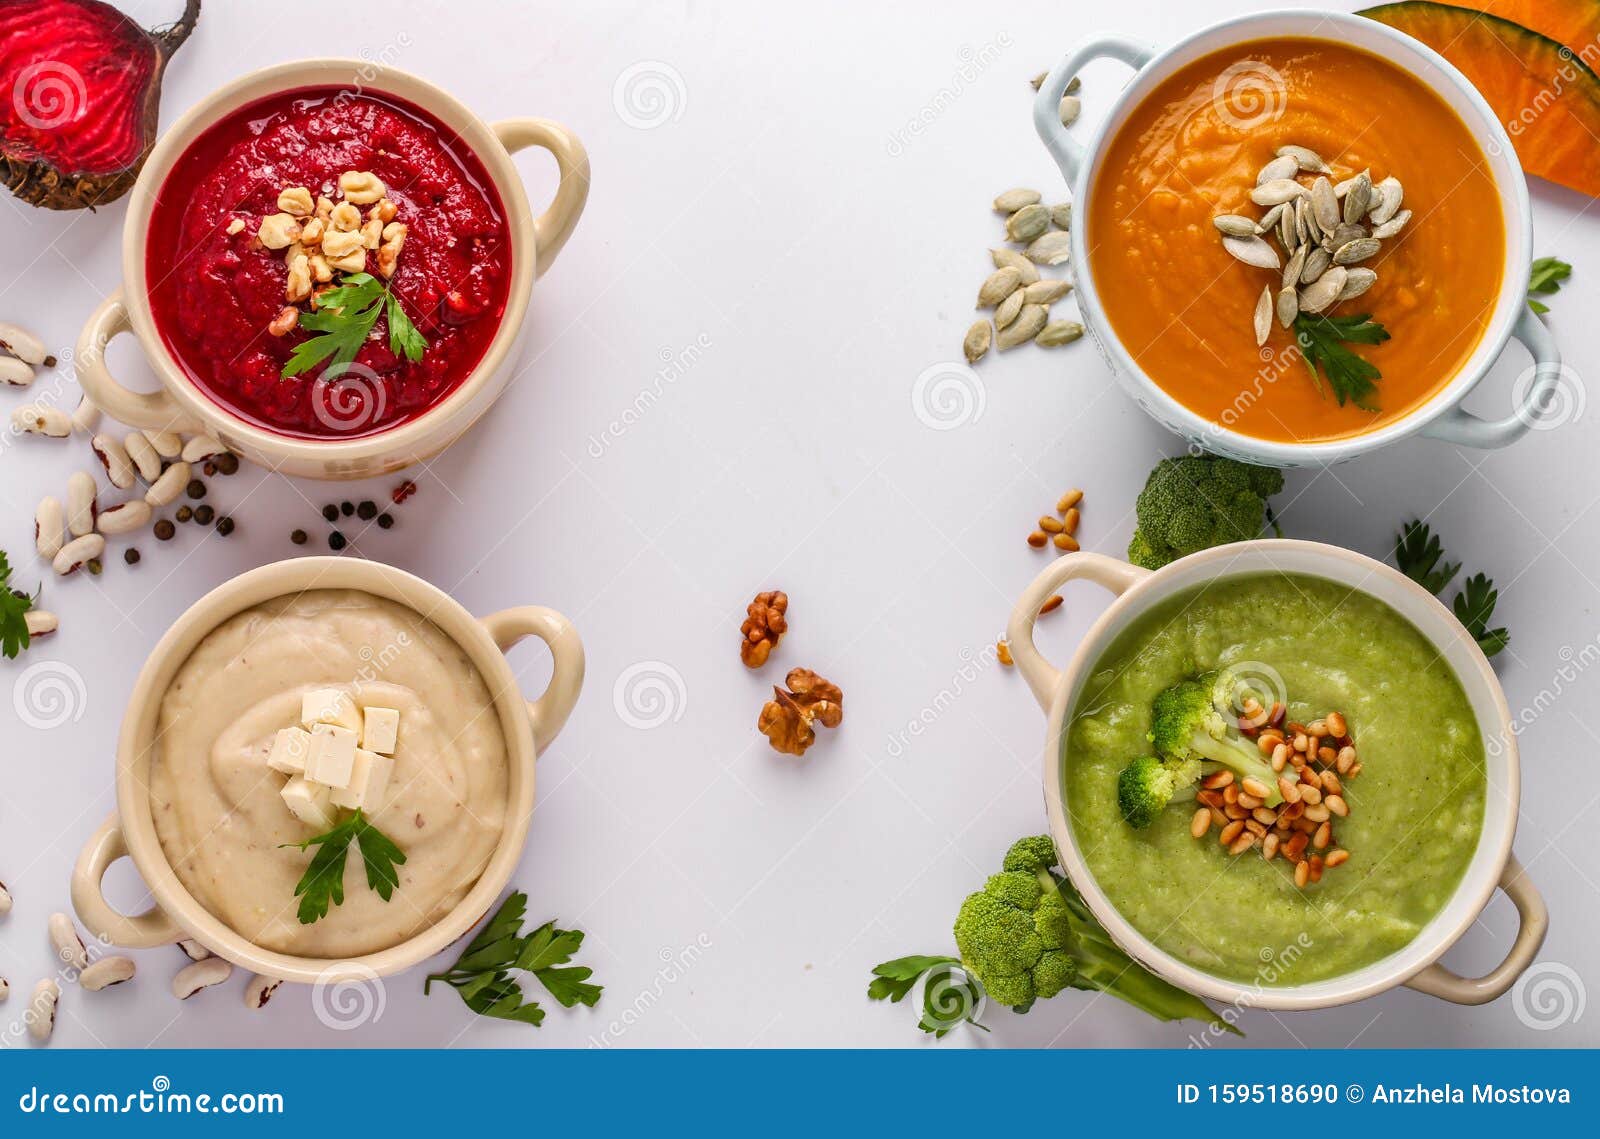 各式五颜六色的蔬菜奶油汤 花椰菜 甜菜 白豆和南瓜 健康饮食 复制空间 库存照片 图片包括有螺母 烹调